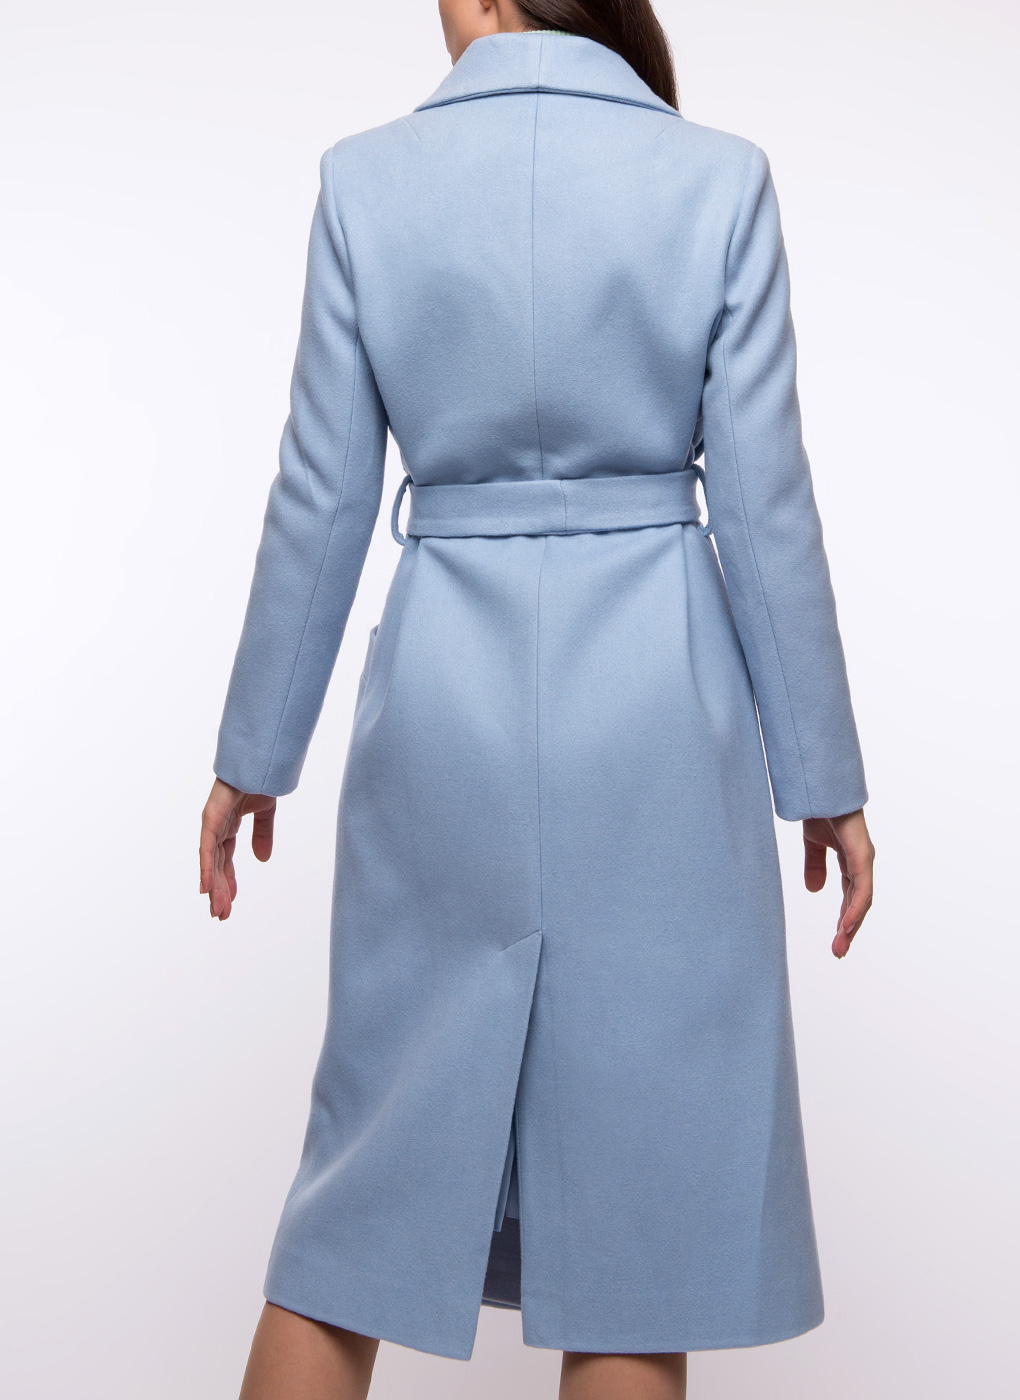 Пальто заря моды. Zarya mody m-895 пальто. Пальто Zarya mody синее. Пальто Заря моды голубое.